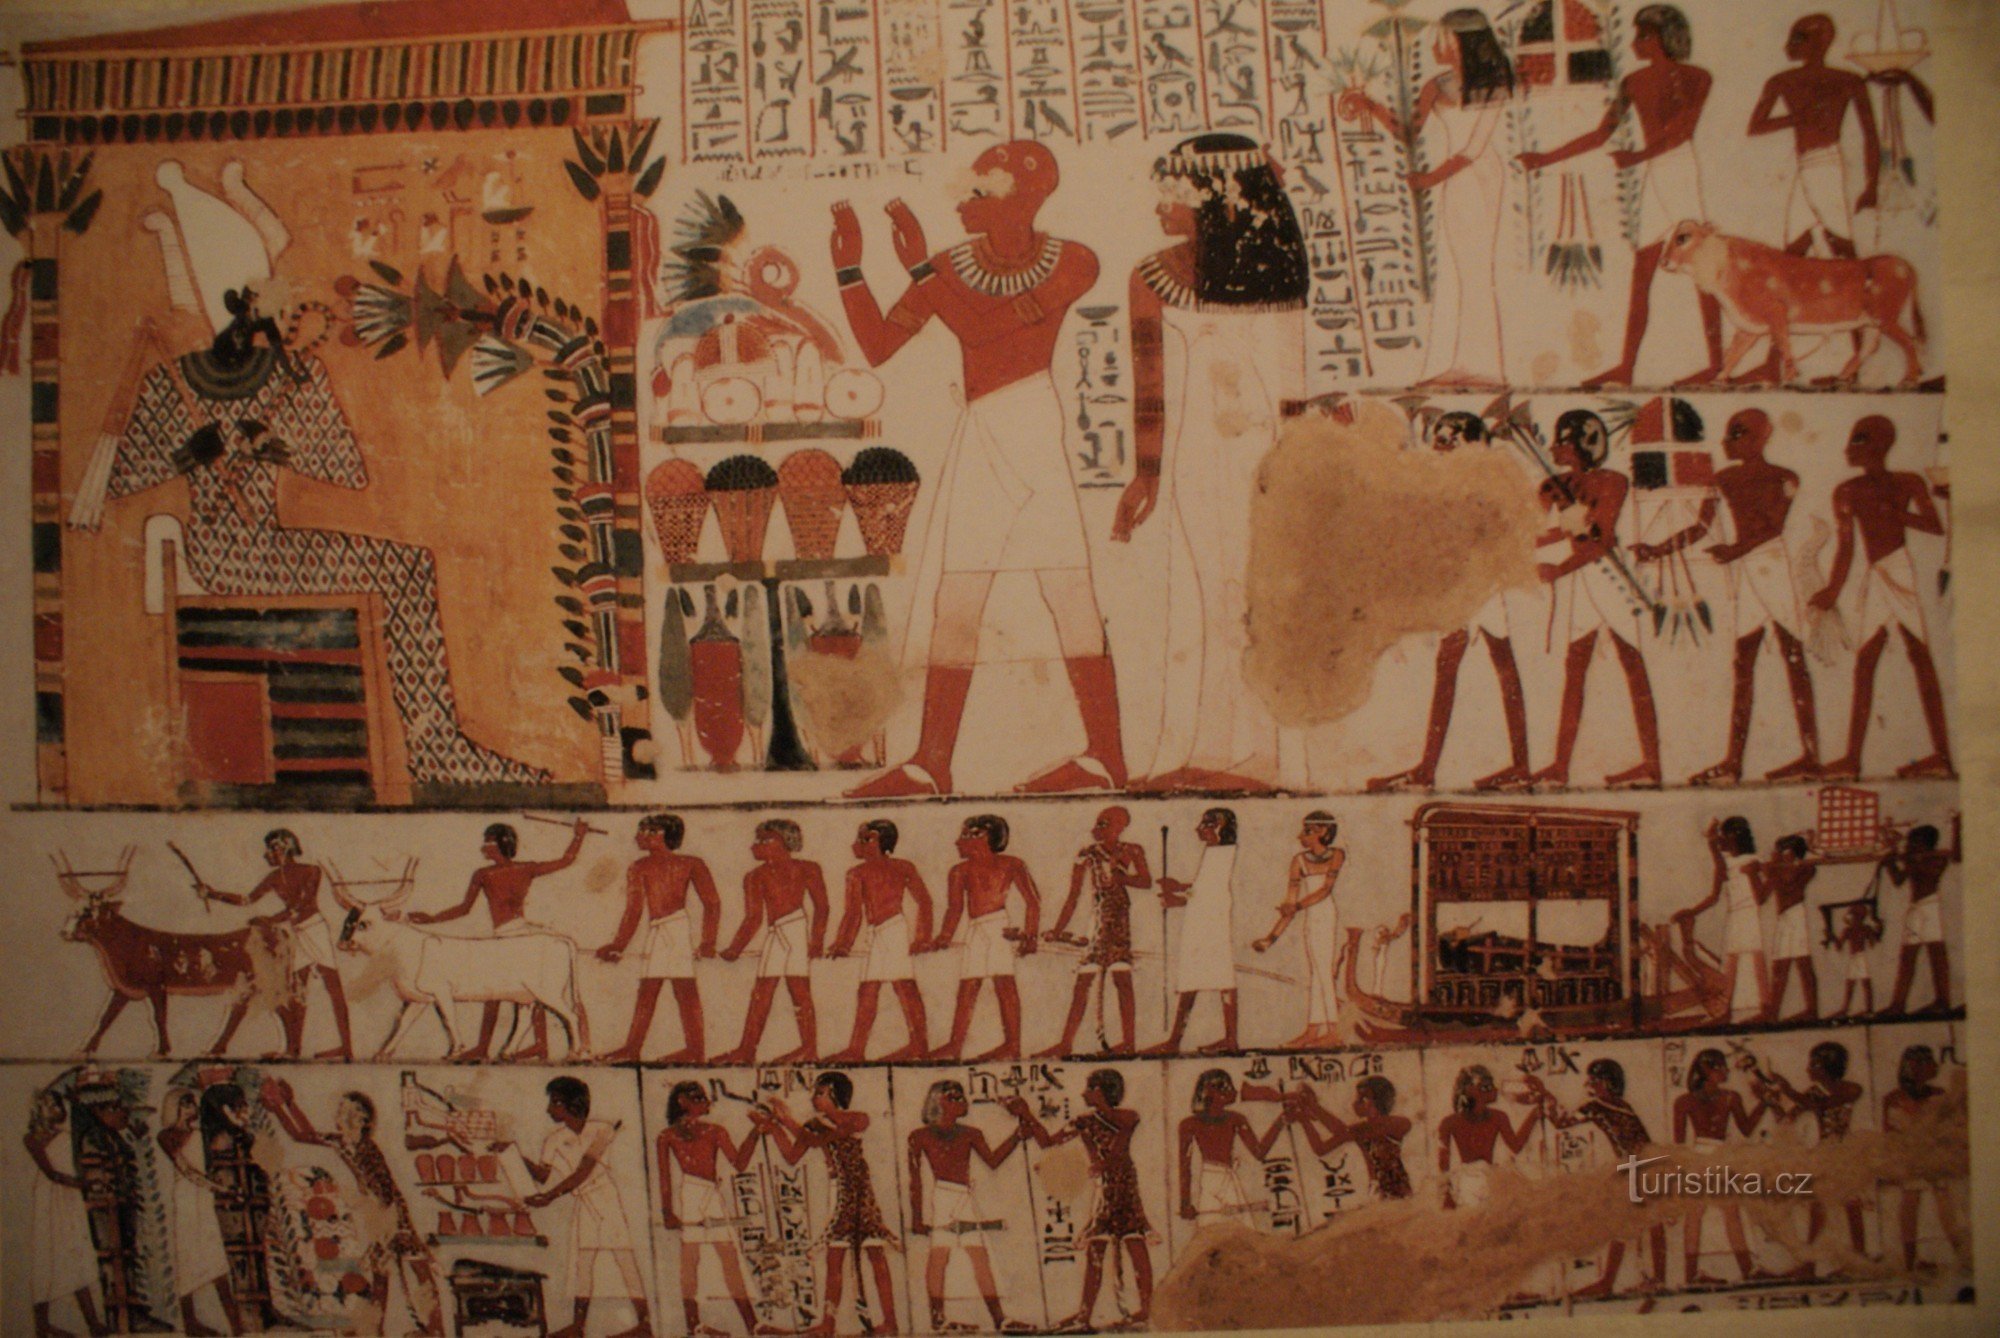 Nu trebuie să mergi până în Egipt pentru Tutankhamon sau mormântul și comorile lui (Brno 2009)